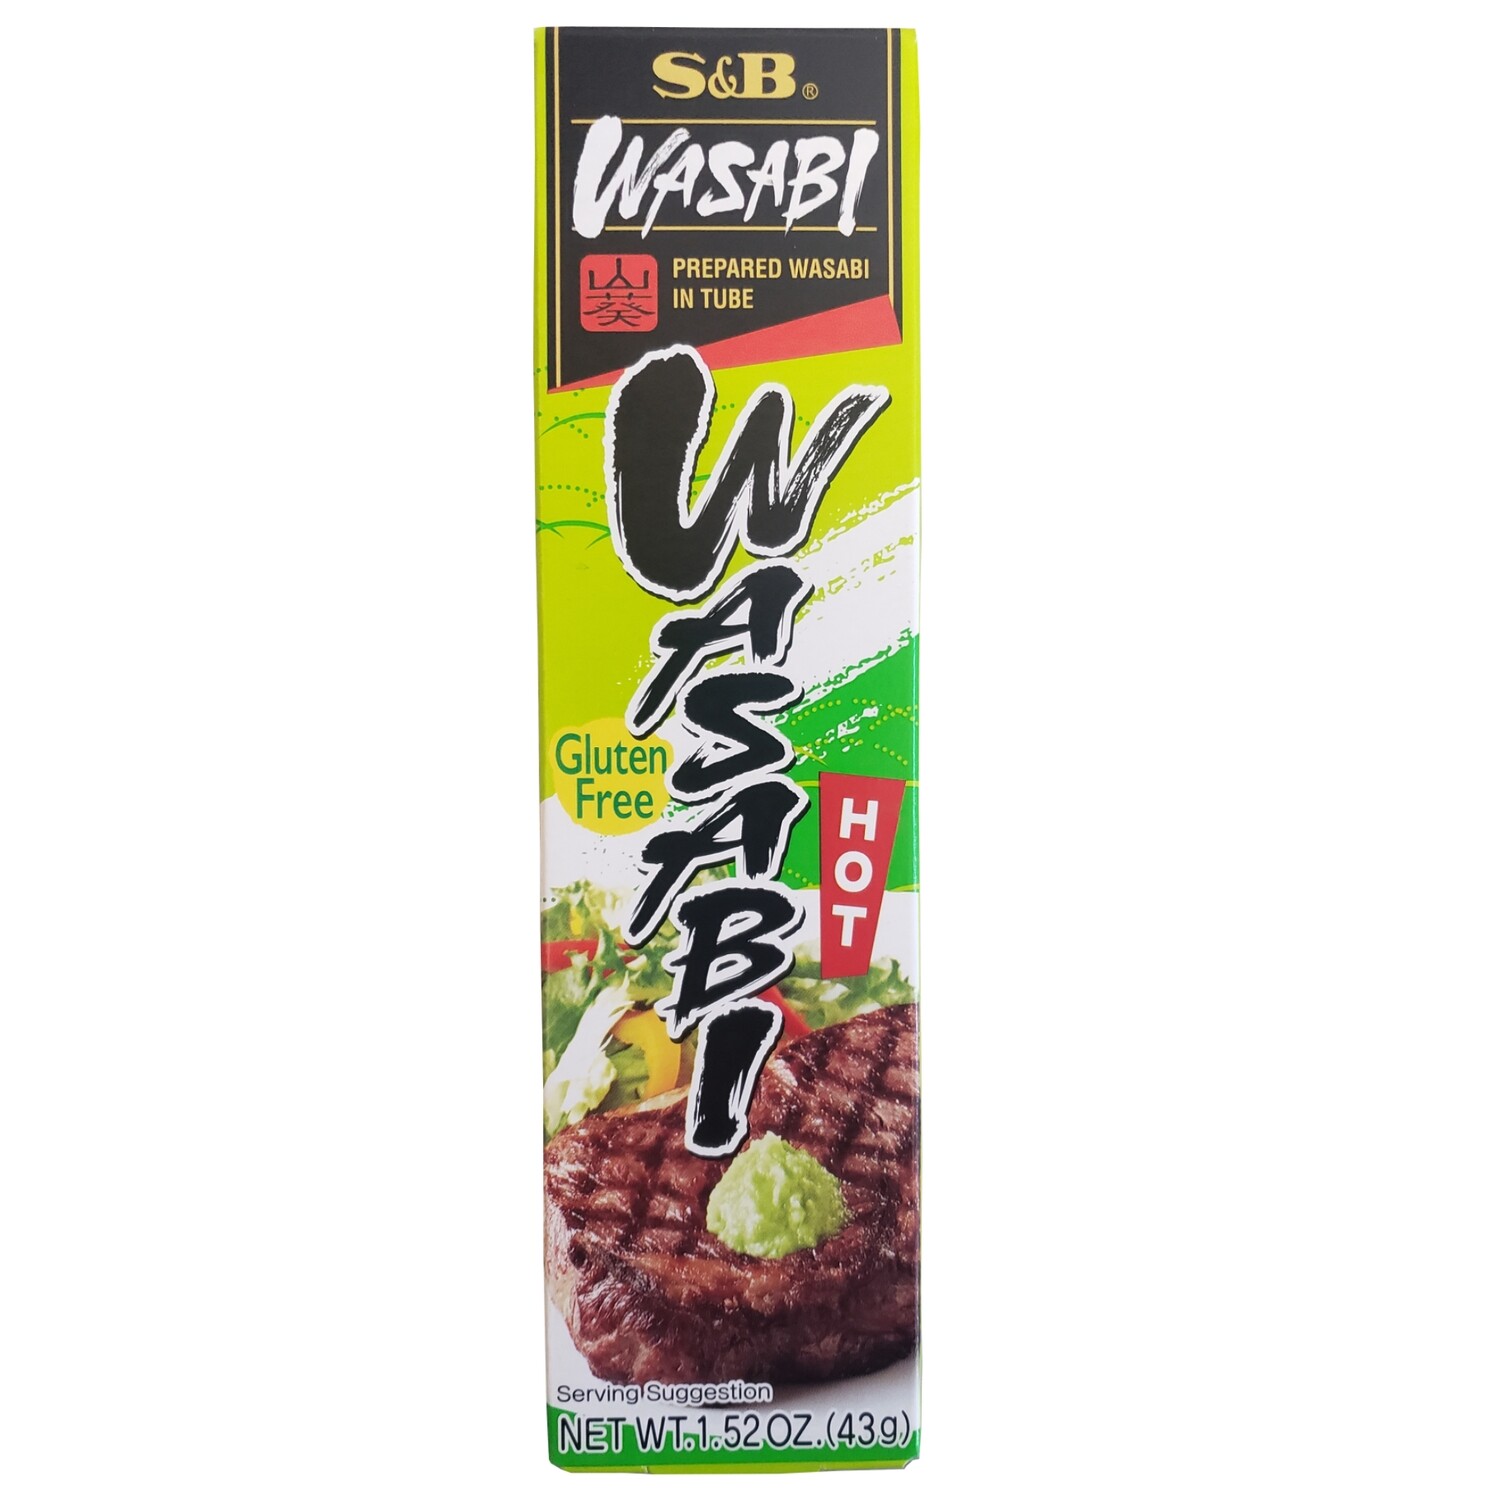 S&B Wasabi Paste in Tube 1.5 oz